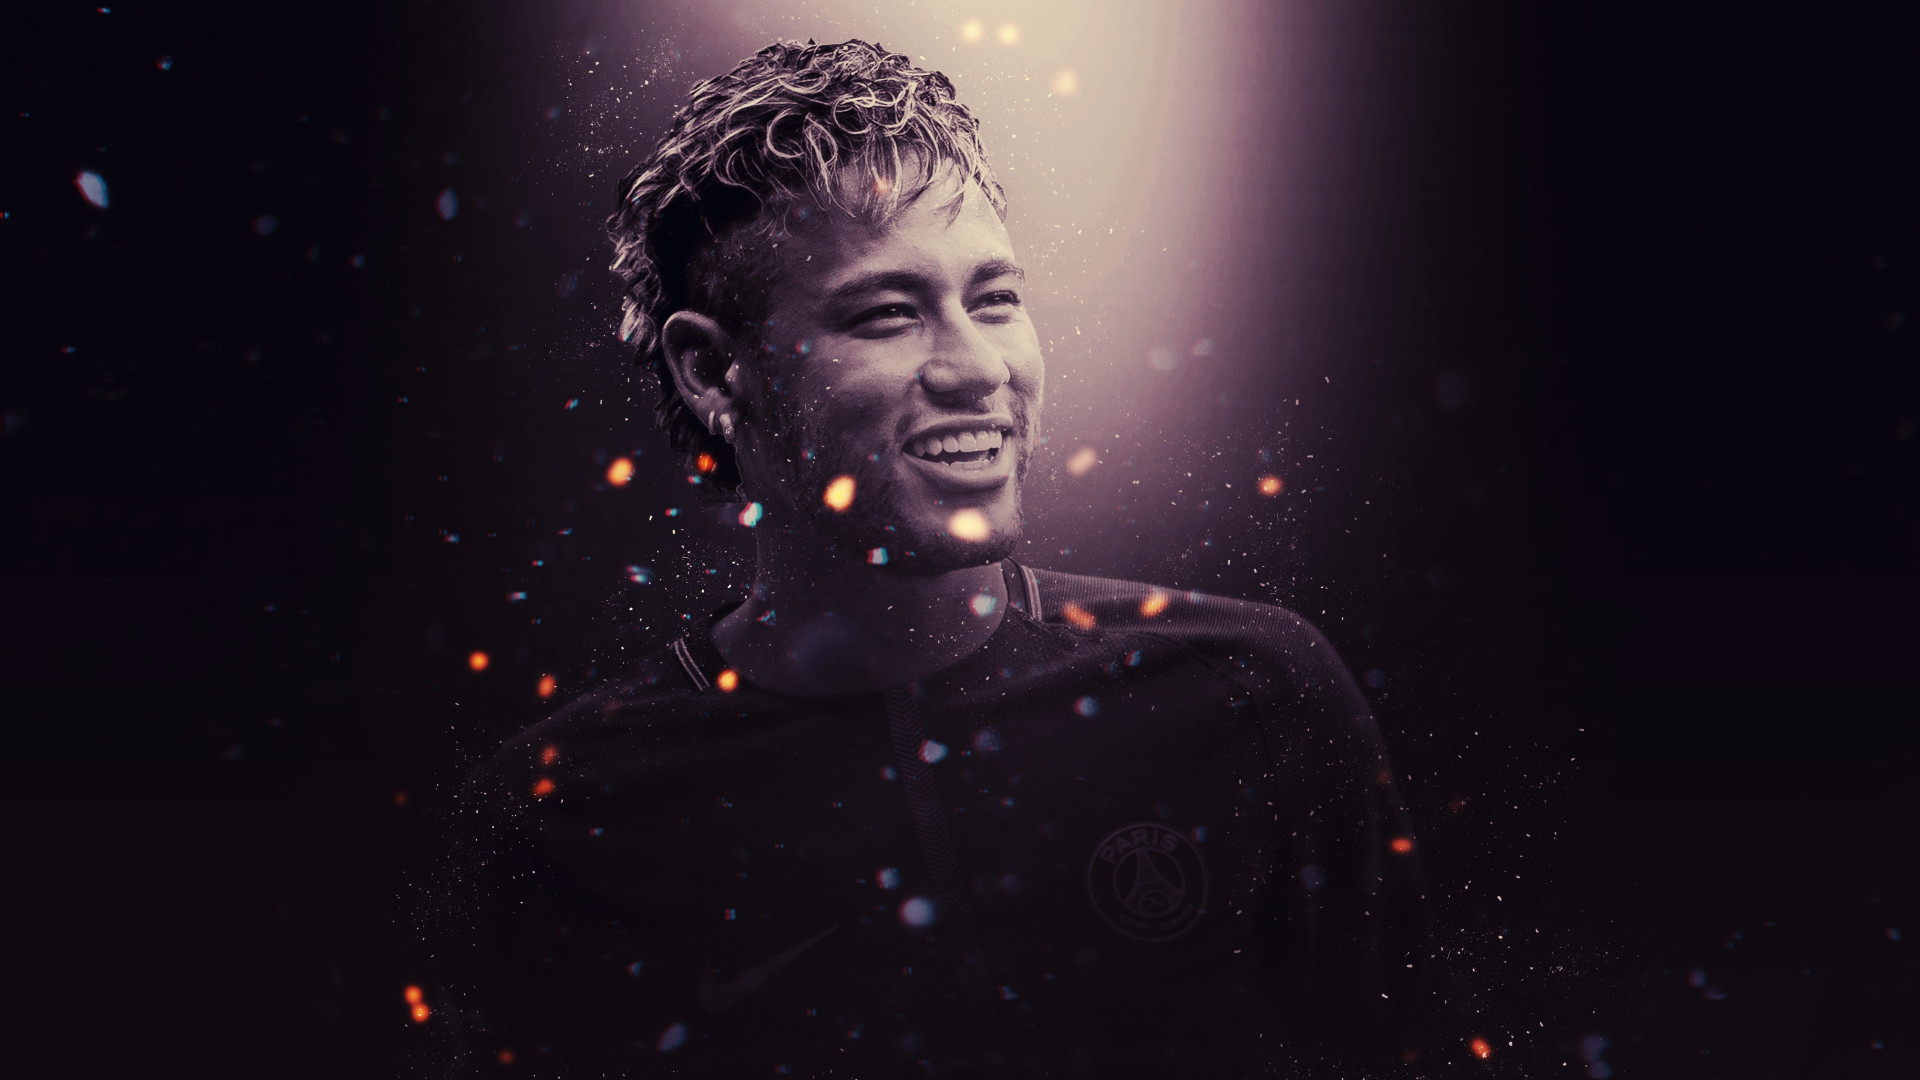 Neymar for PSG wallpaper 1920x1080